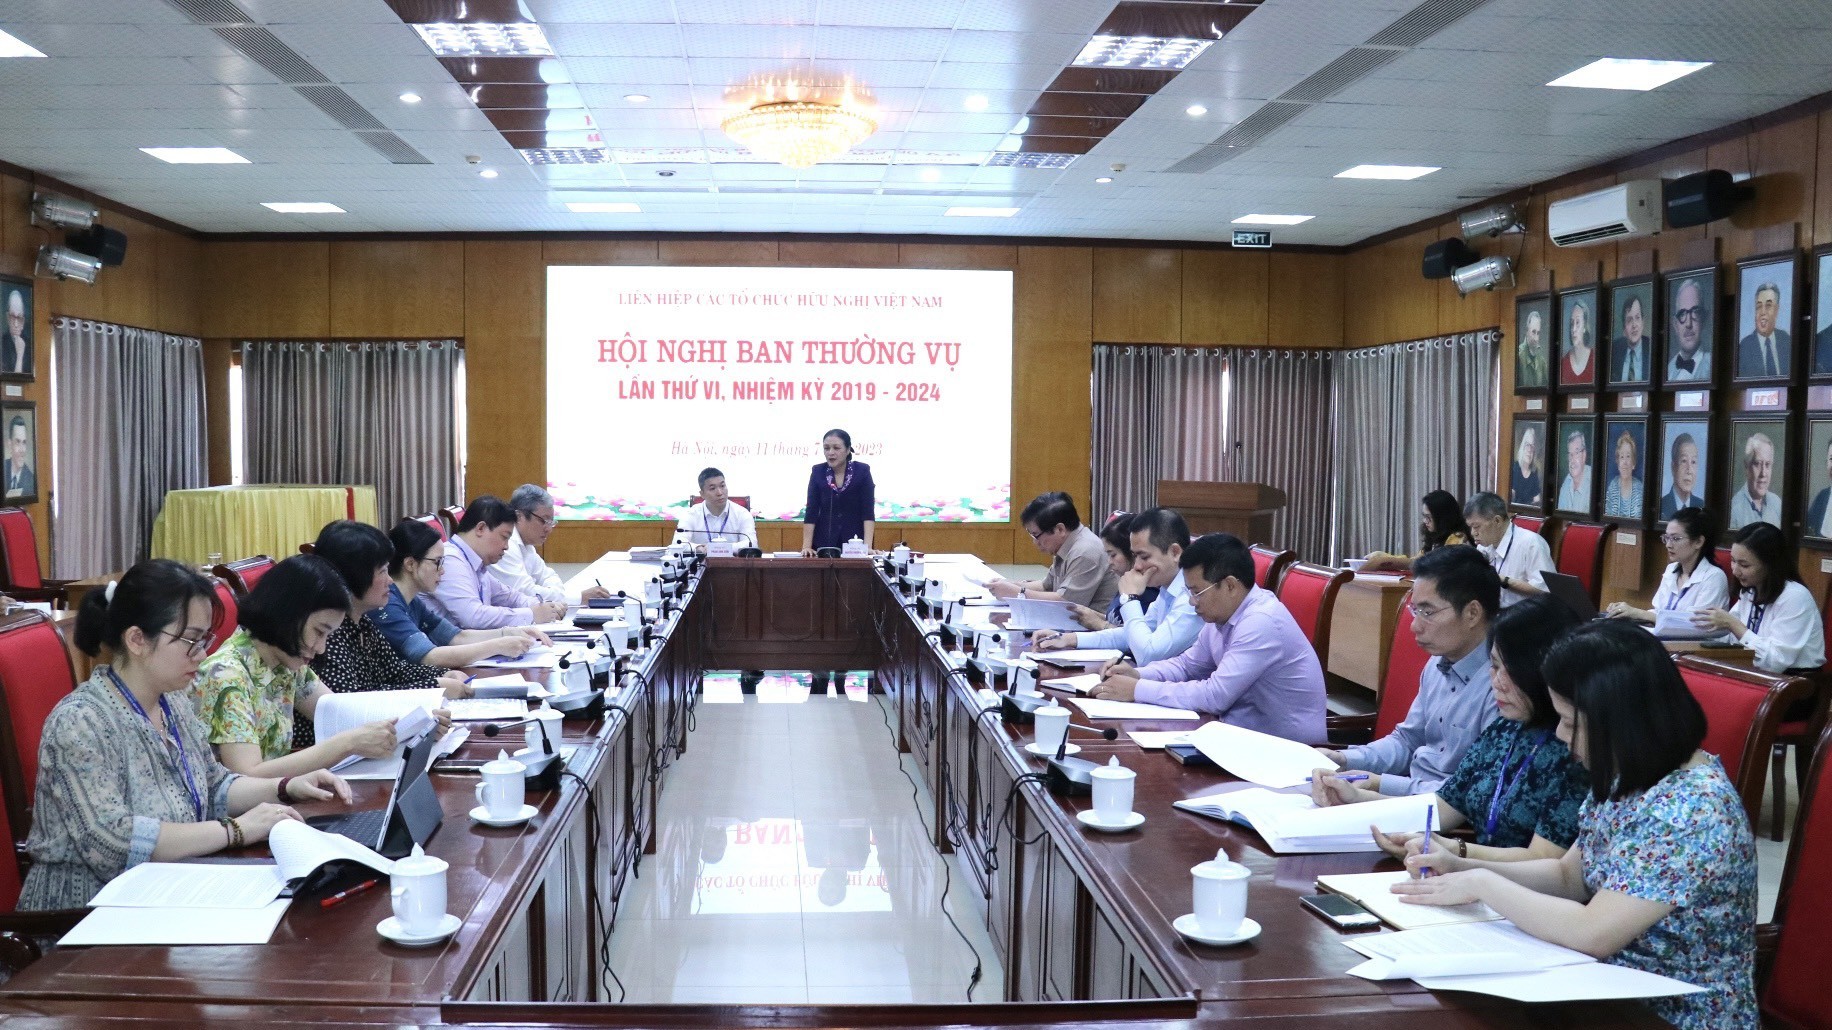 Hội nghị Ban Thường vụ Liên hiệp các tổ chức hữu nghị Việt Nam lần thứ VI nhiệm kỳ 2019-2024